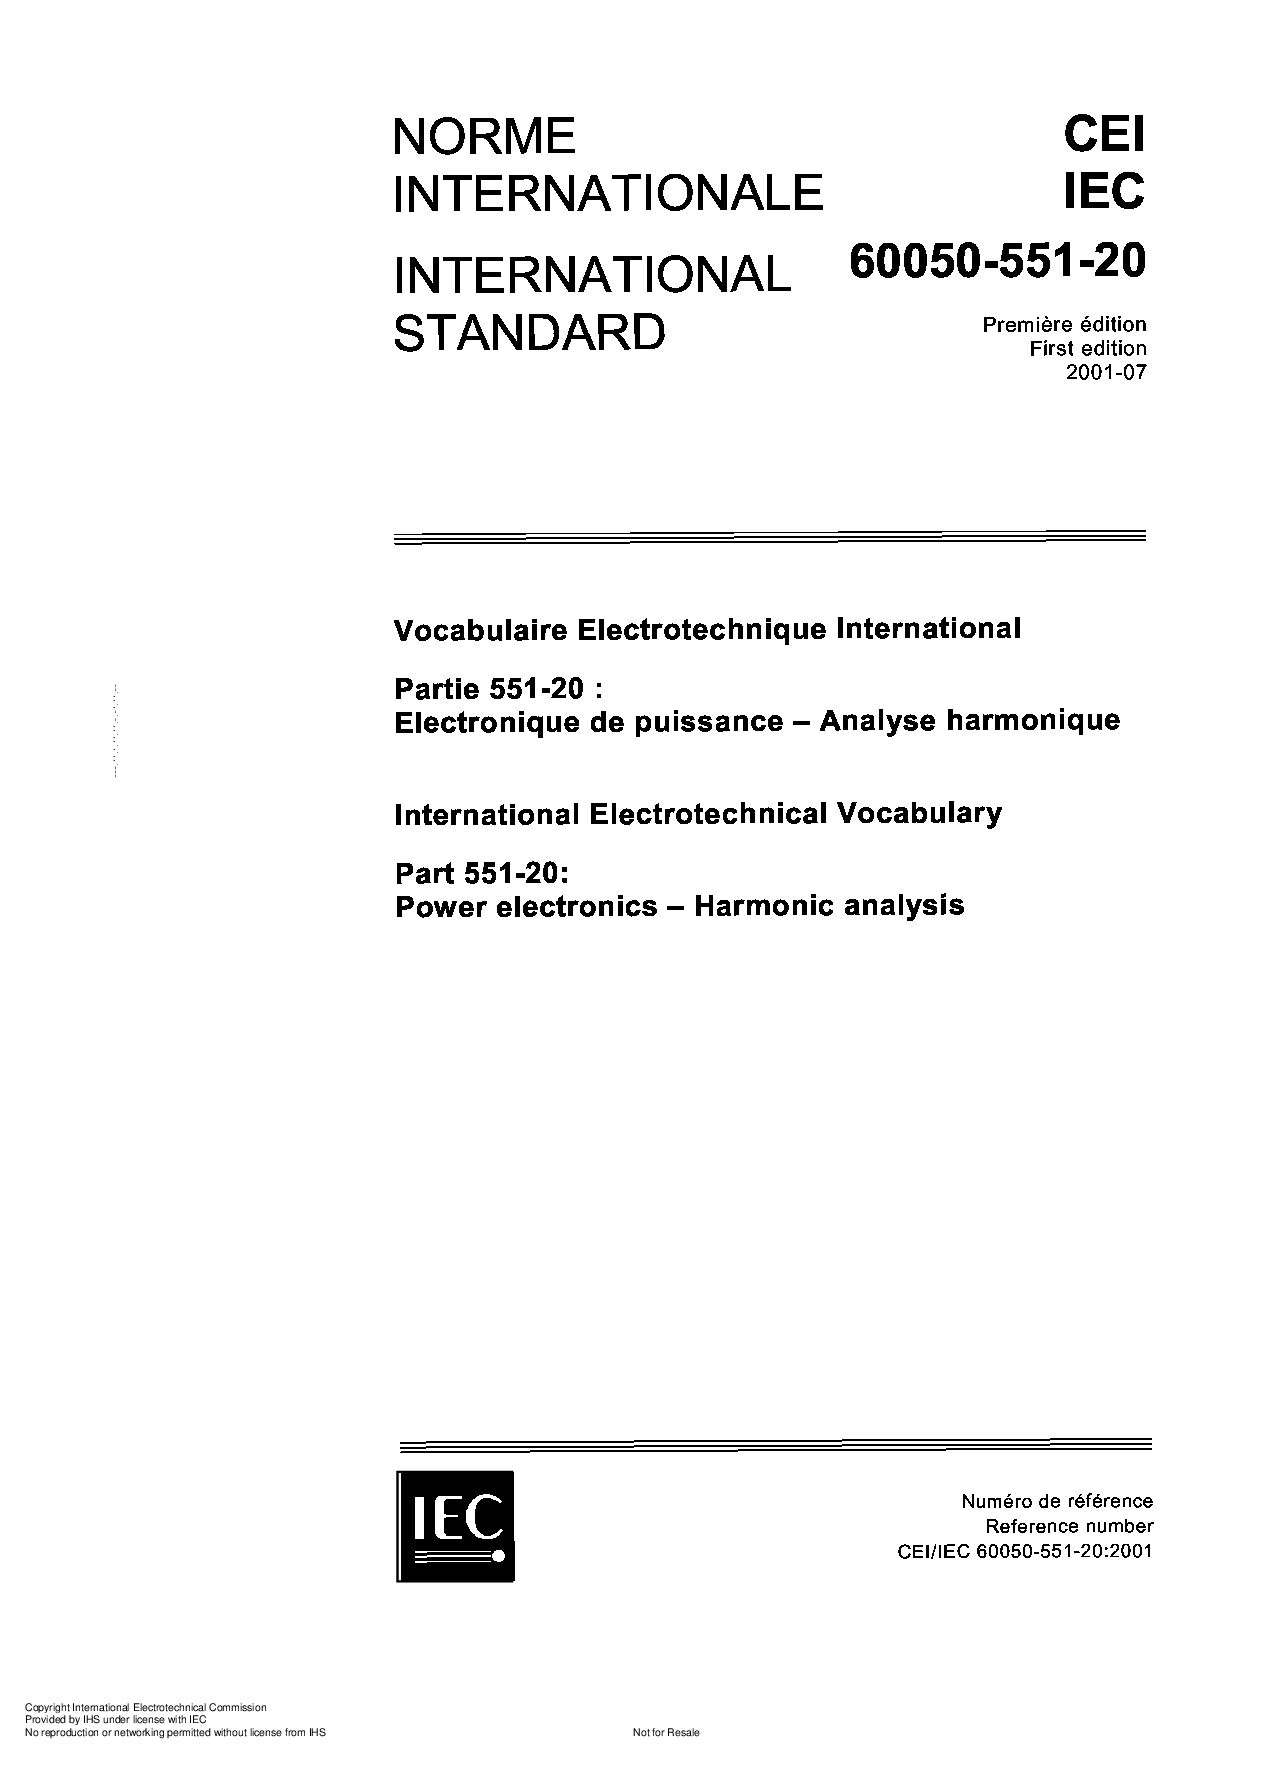 IEC 60050-551-20:2001